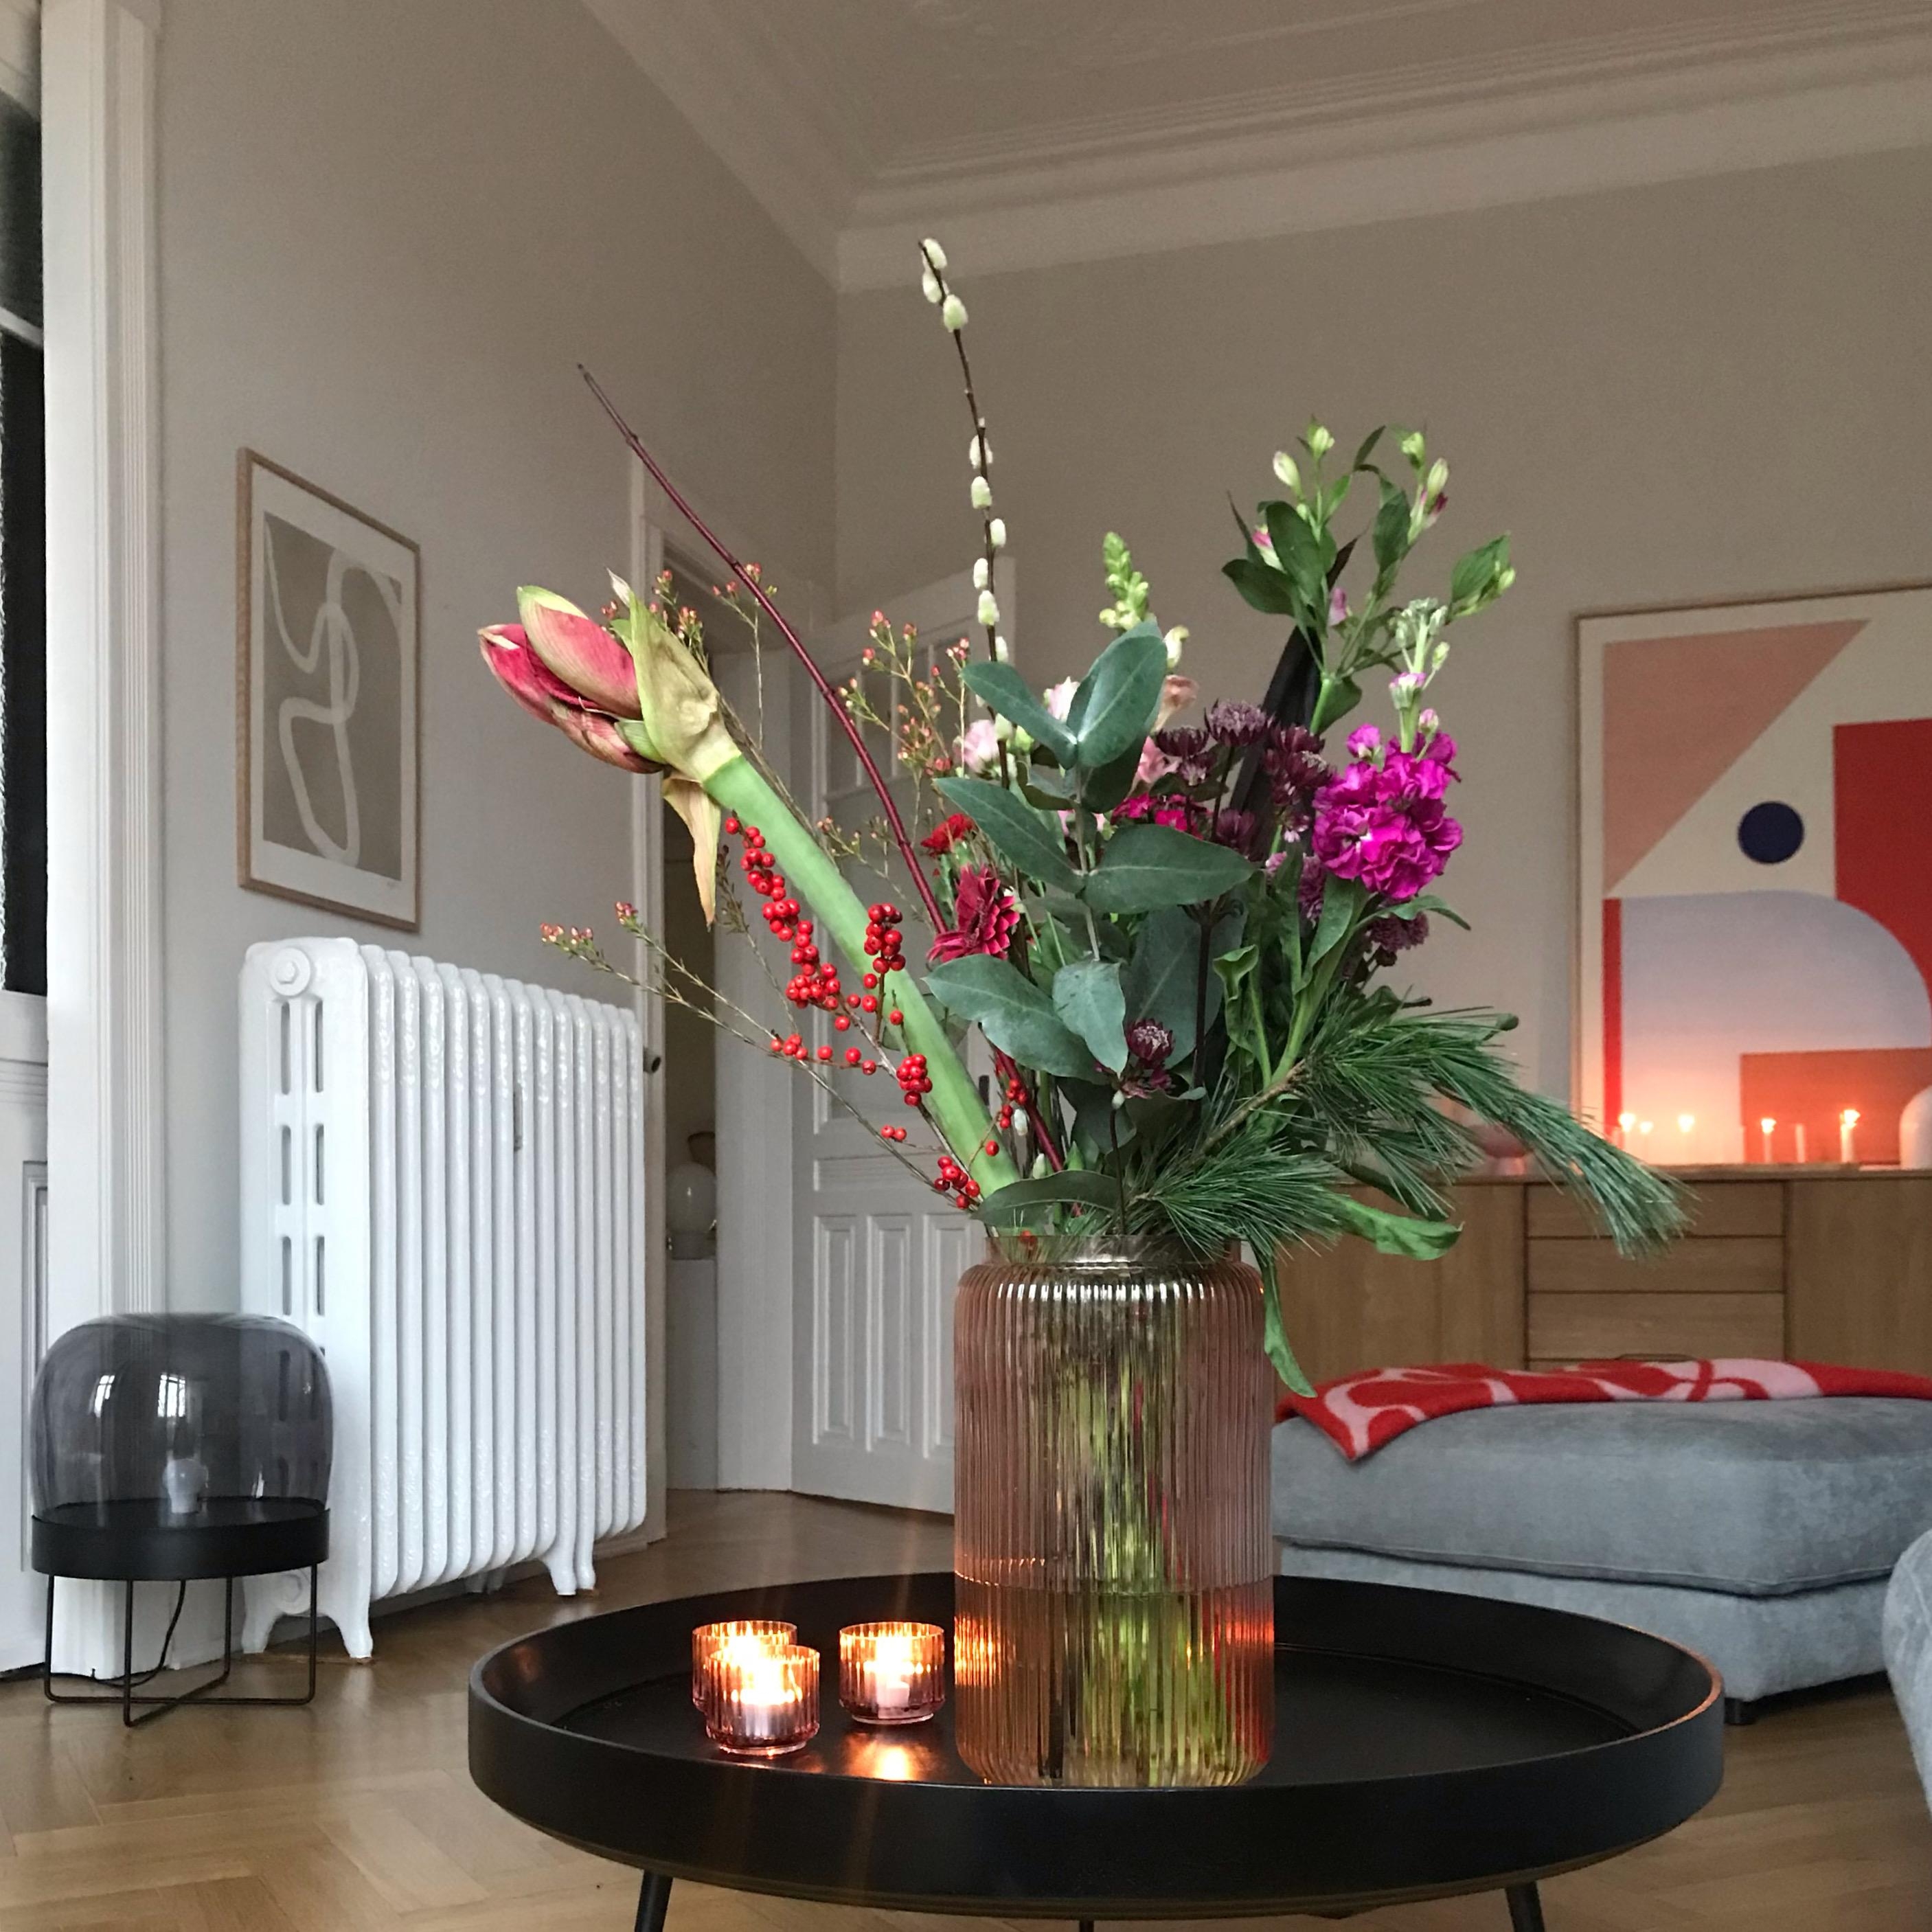 Frische #blumen dürfen hier auch zur #adventzeit nicht fehlen. #flowers #living #wohnen #couchstyle #skandistyle 